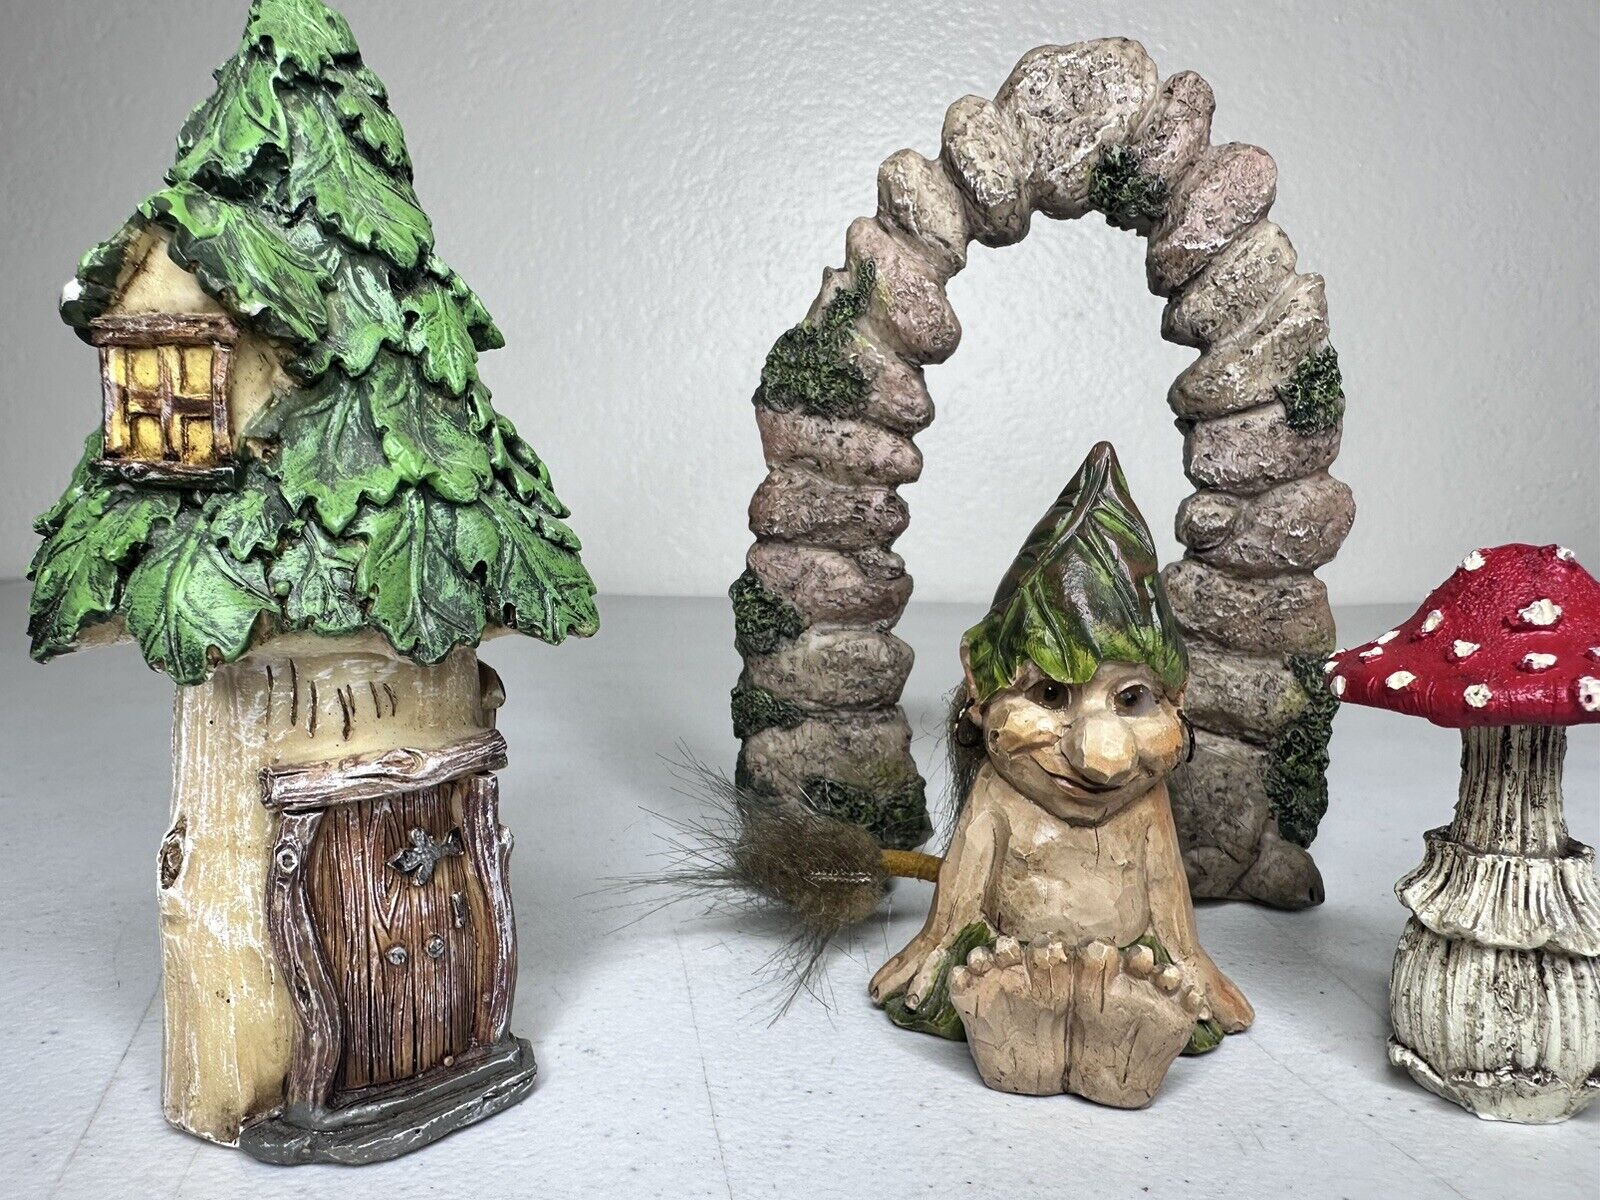 Exclusive Rare Vintage Norwegian Troll & Enchanted Garden Décor Set - Fantasy Collectible for Home & Garden - TreasuTiques